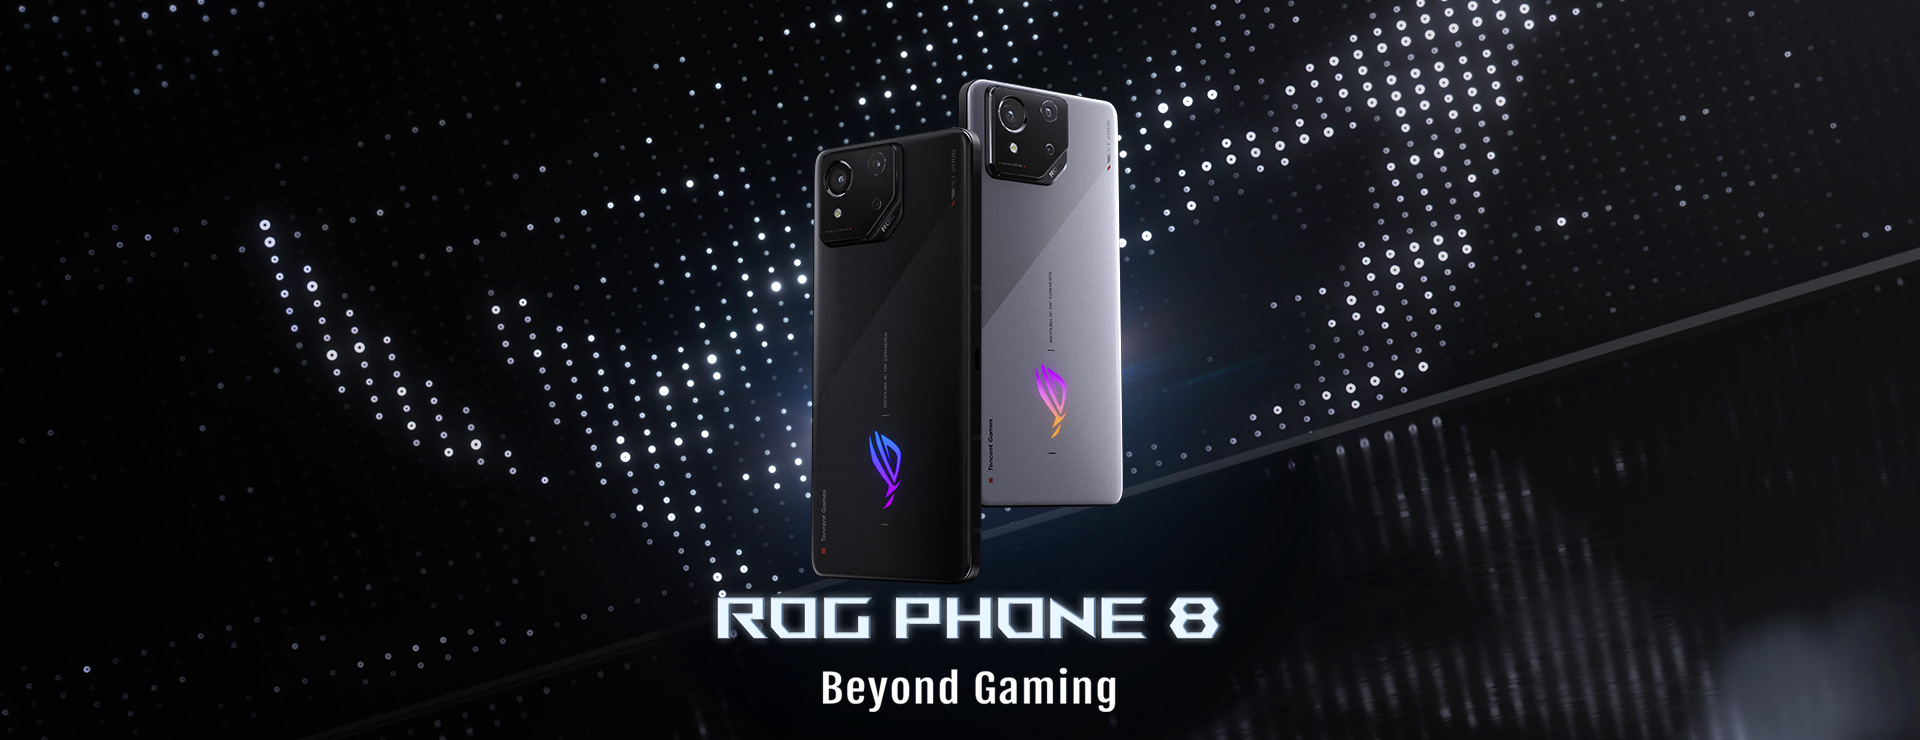 ROG Phone 8 Banner